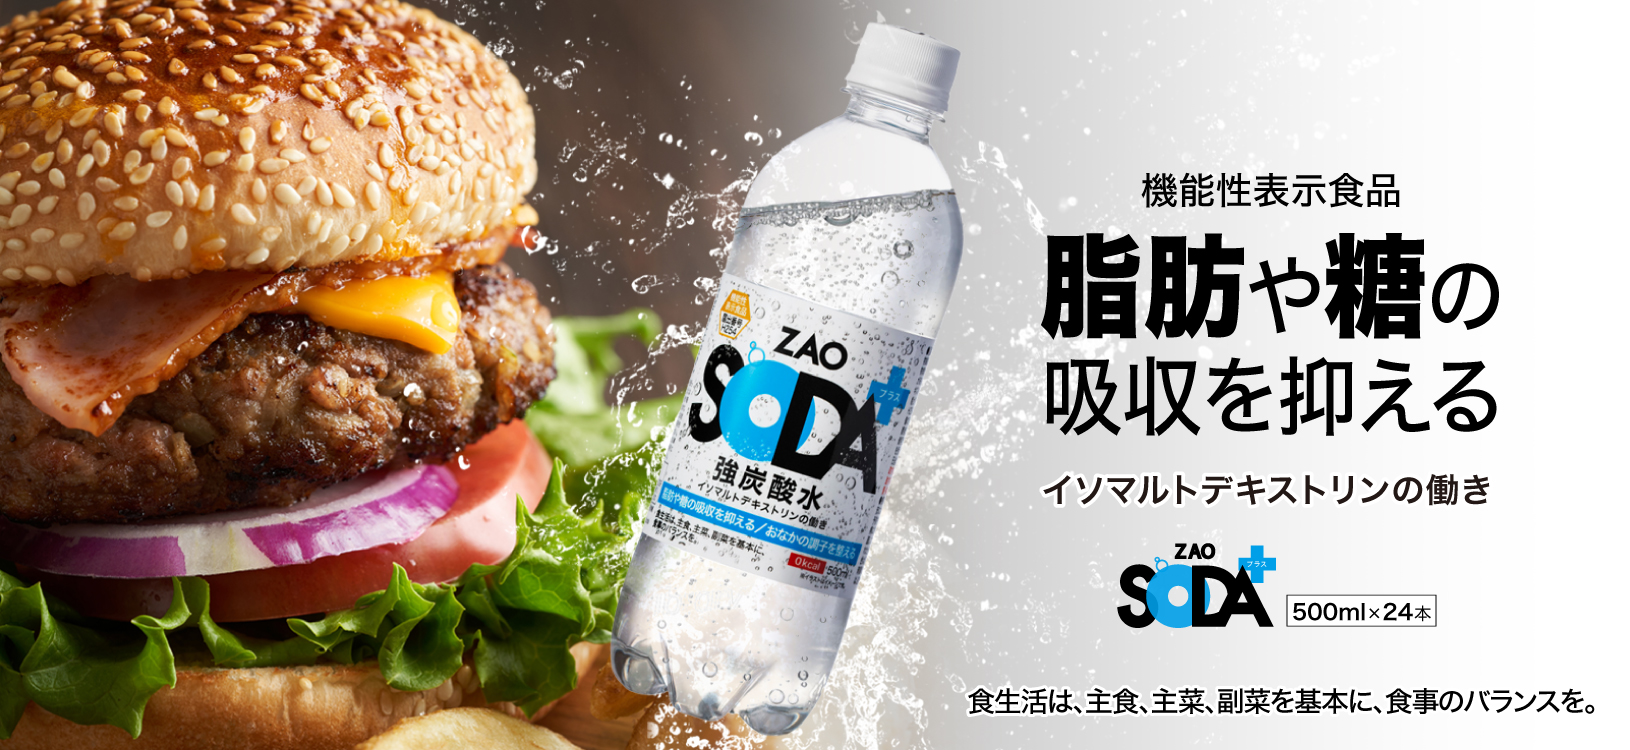 機能性表示食品 脂肪や糖の吸収を抑えるイソマルトデキストリンの働き ZAO SODAプラス500ml×24本